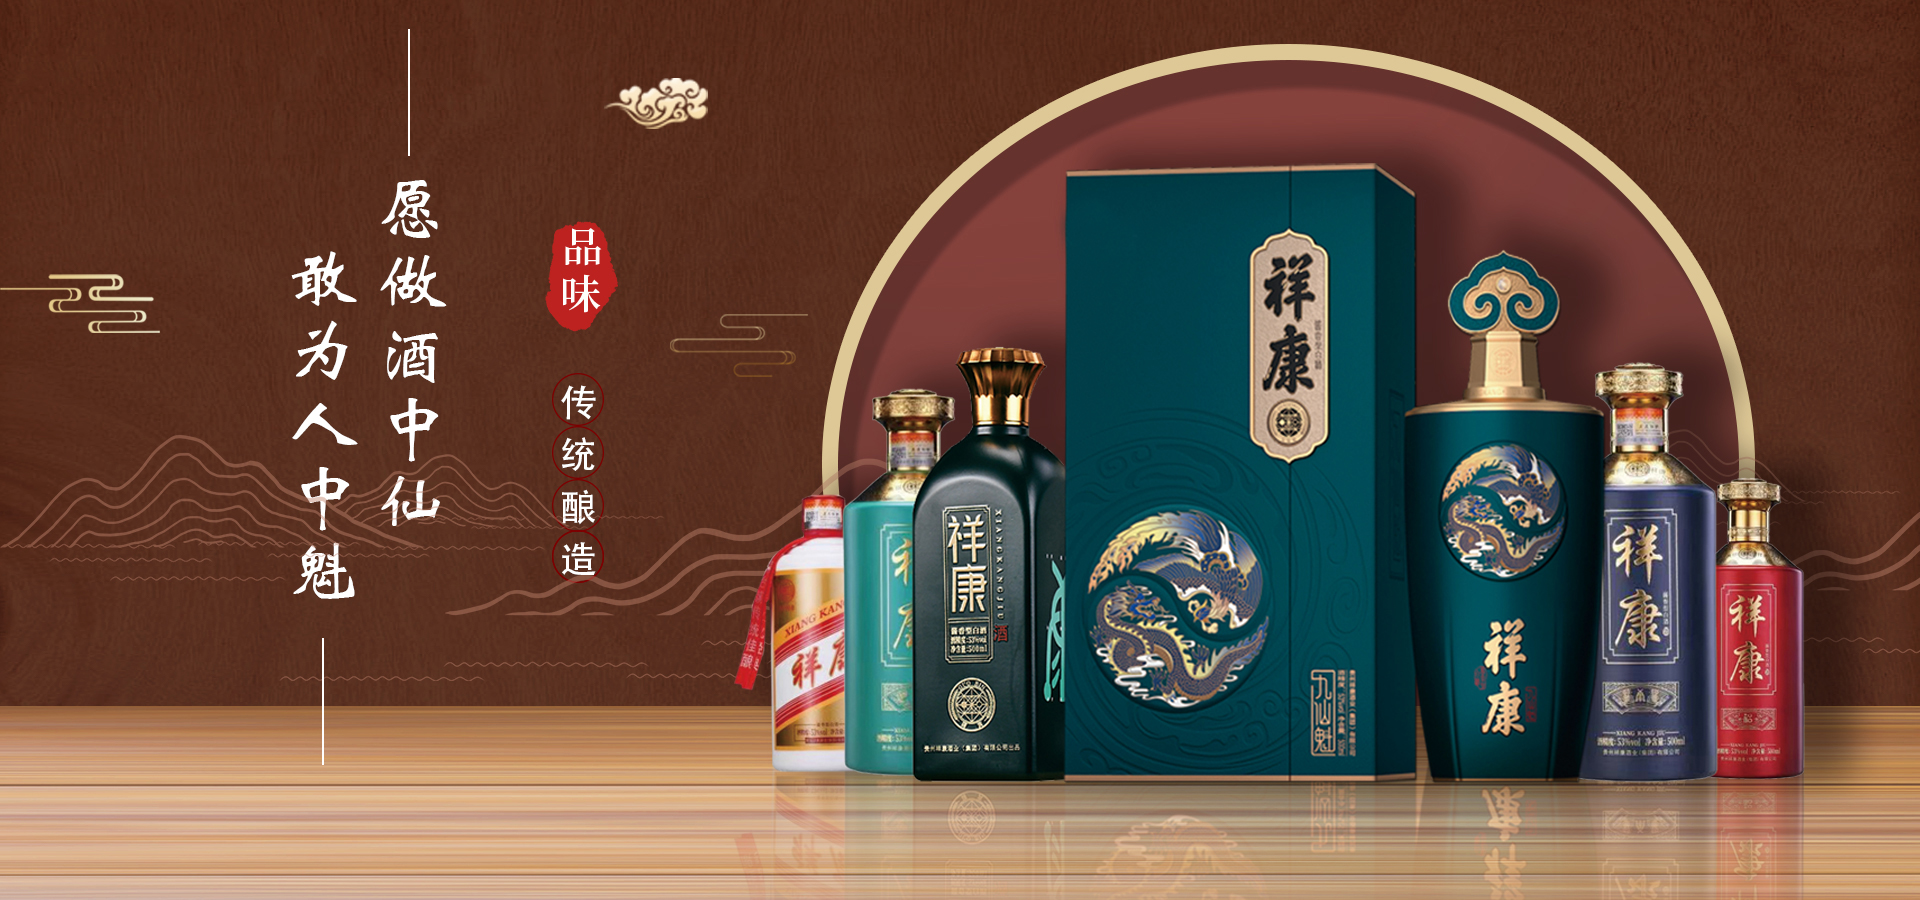 祥康酒业集团 - 贵州茅台镇酱香型白酒品牌